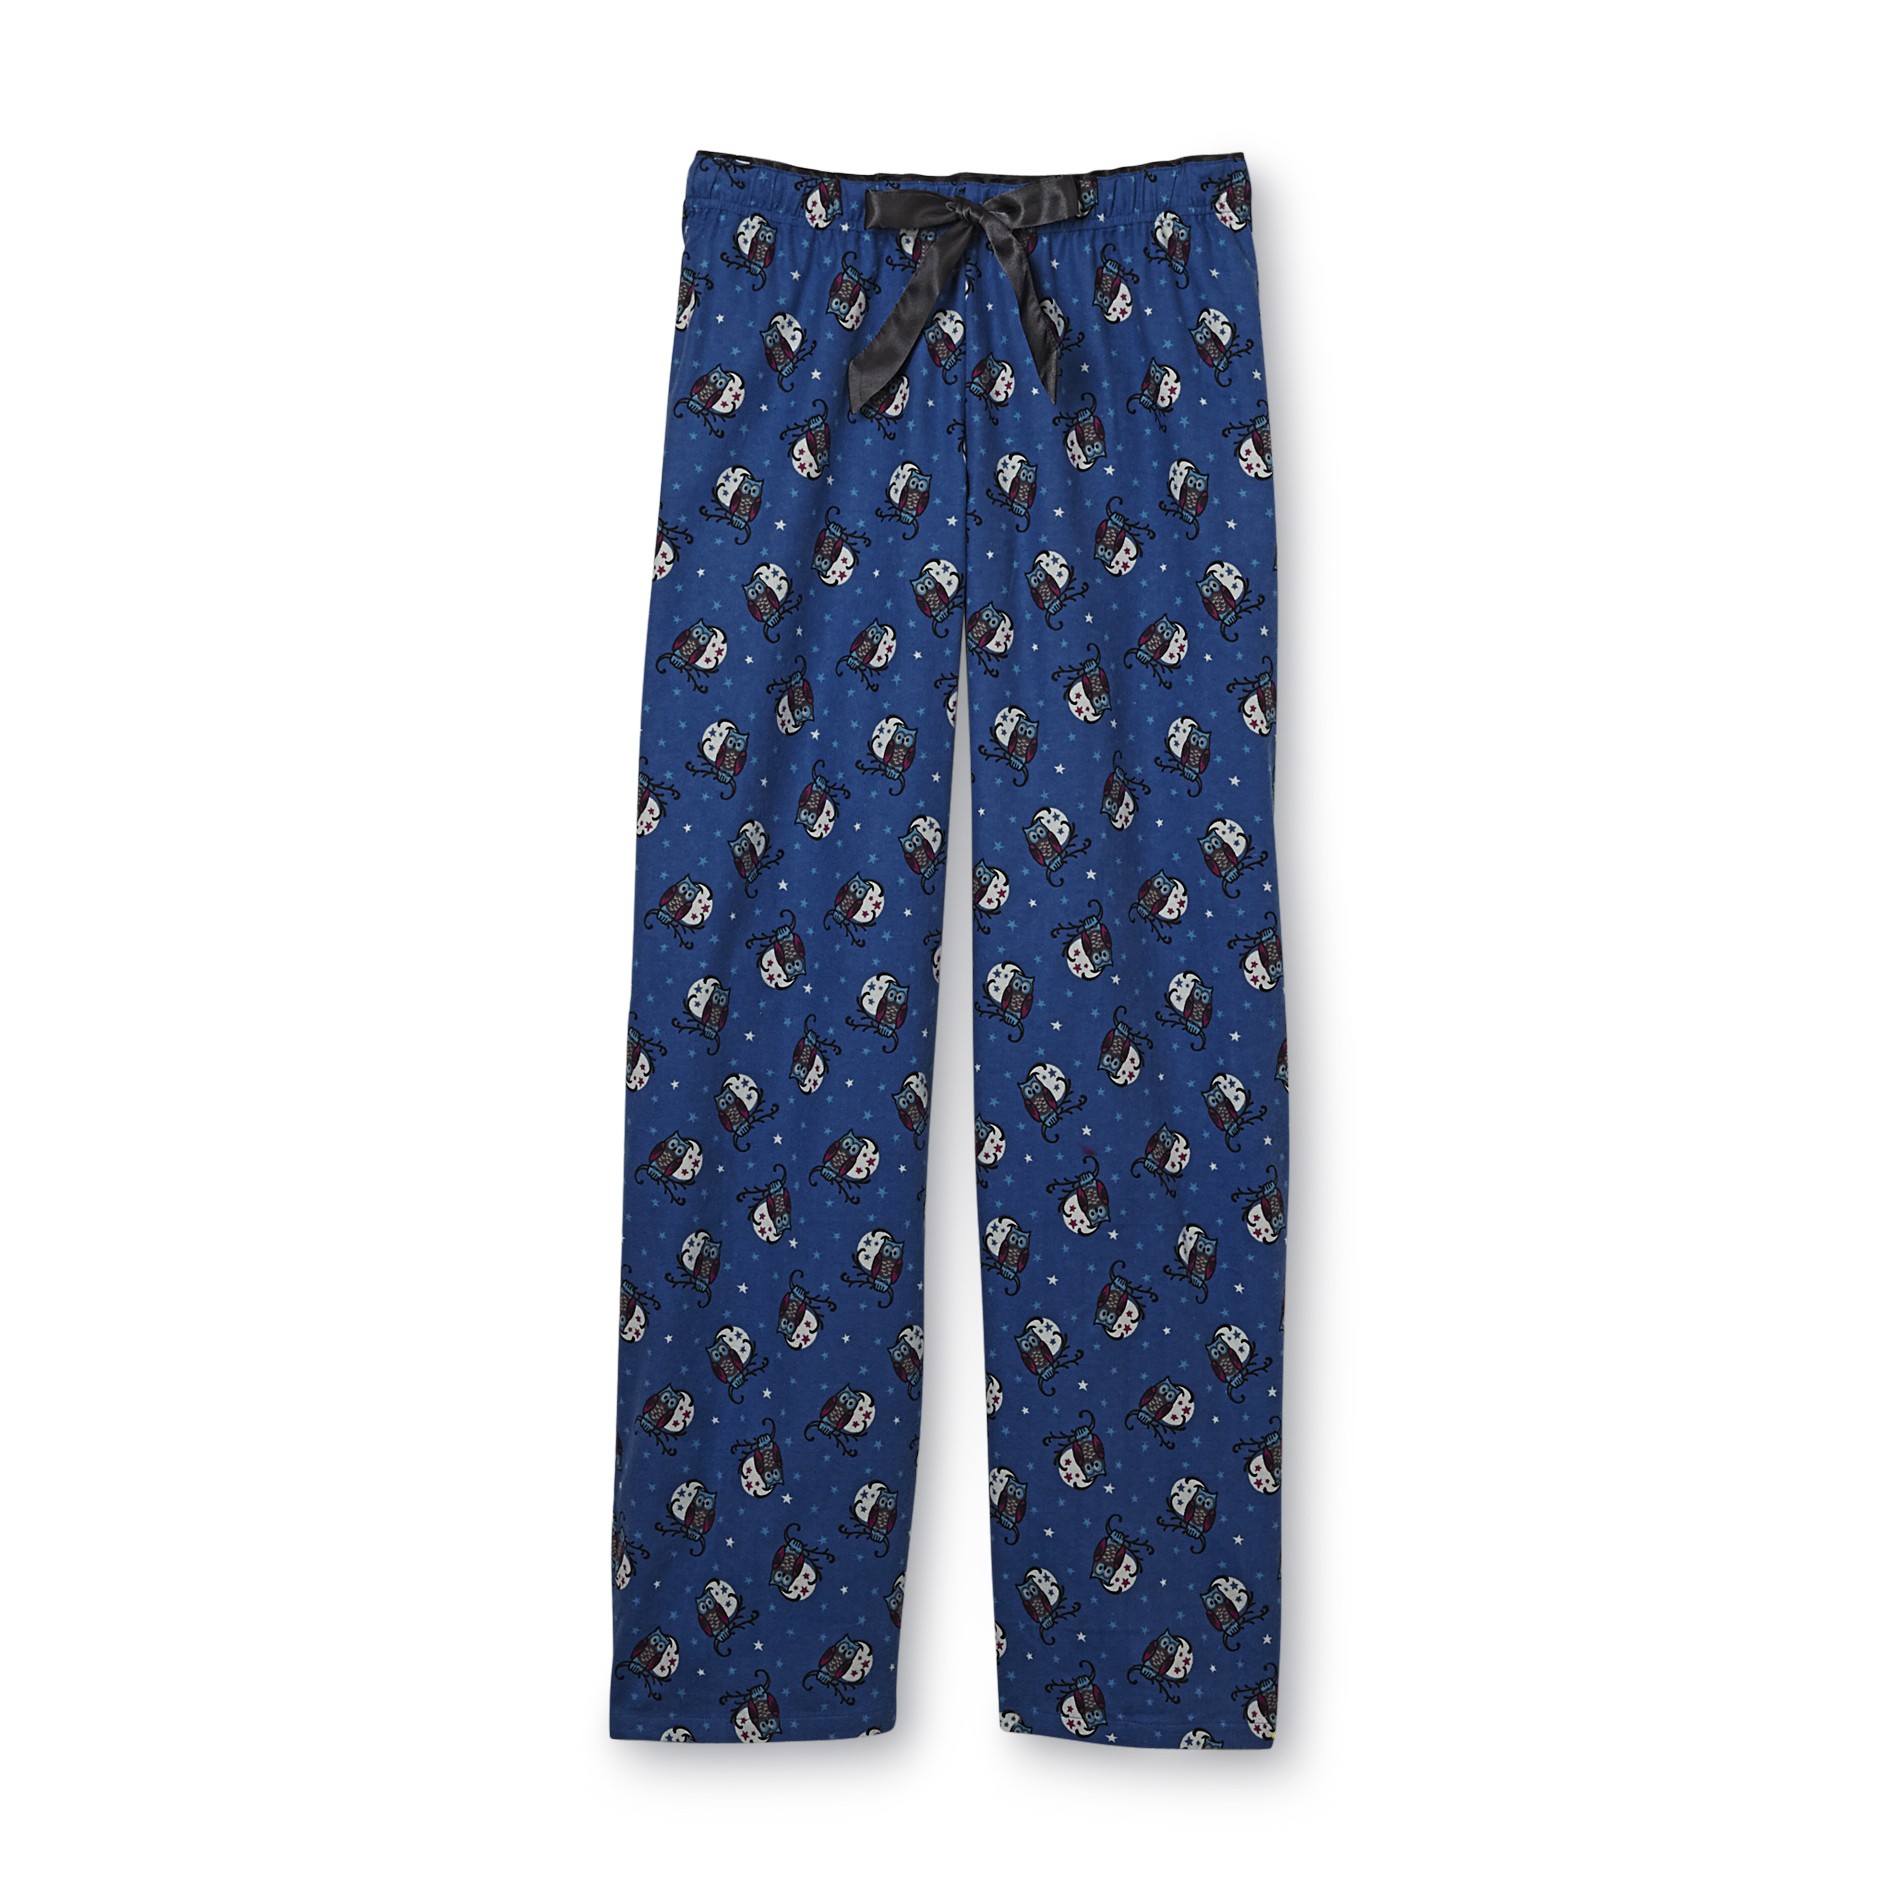 Covington Women's Flannel Pajama Pants - Owls